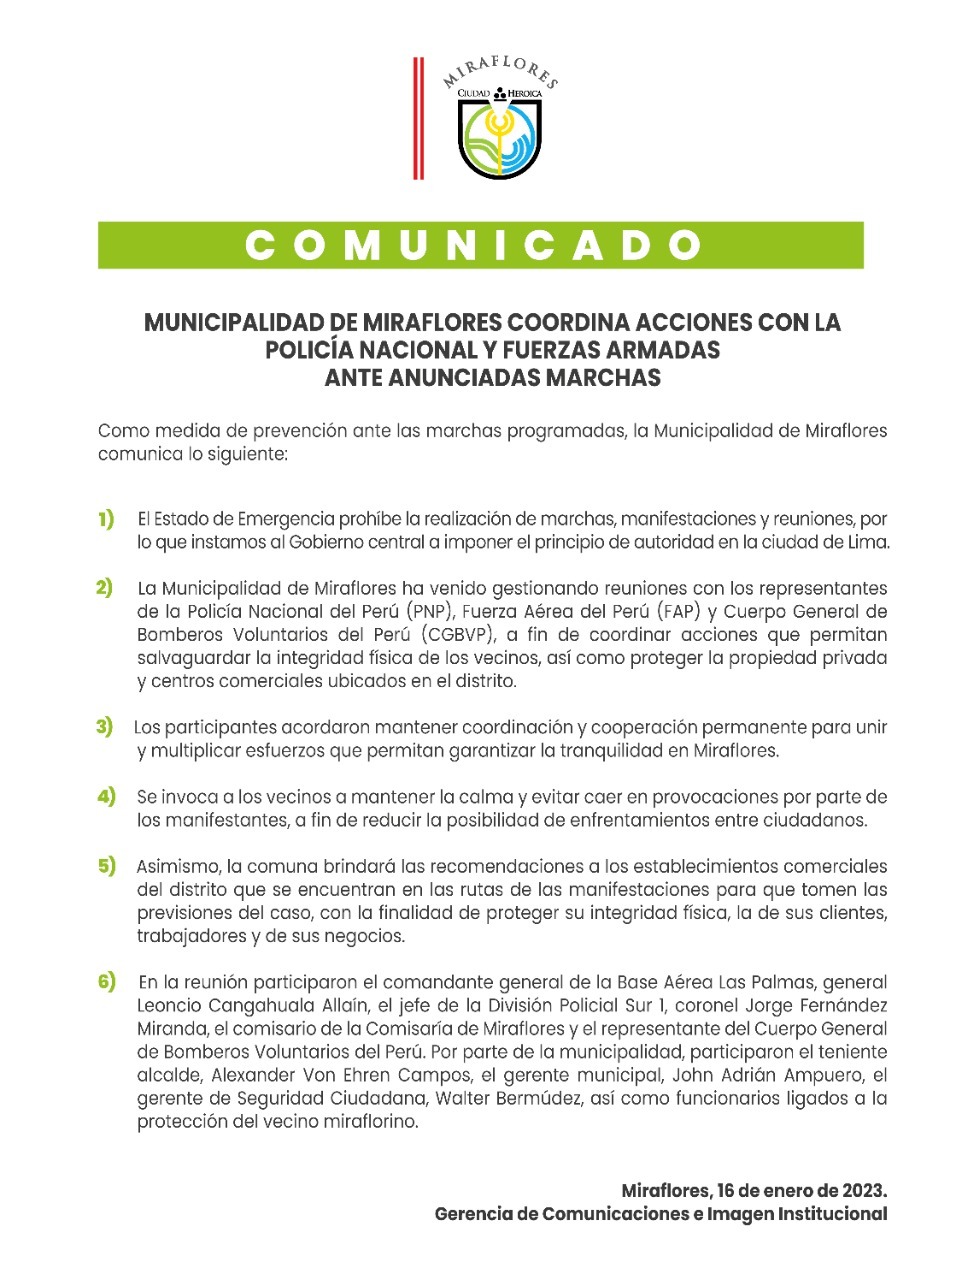 Comunicado de Miraflores emitido el último lunes 16. 